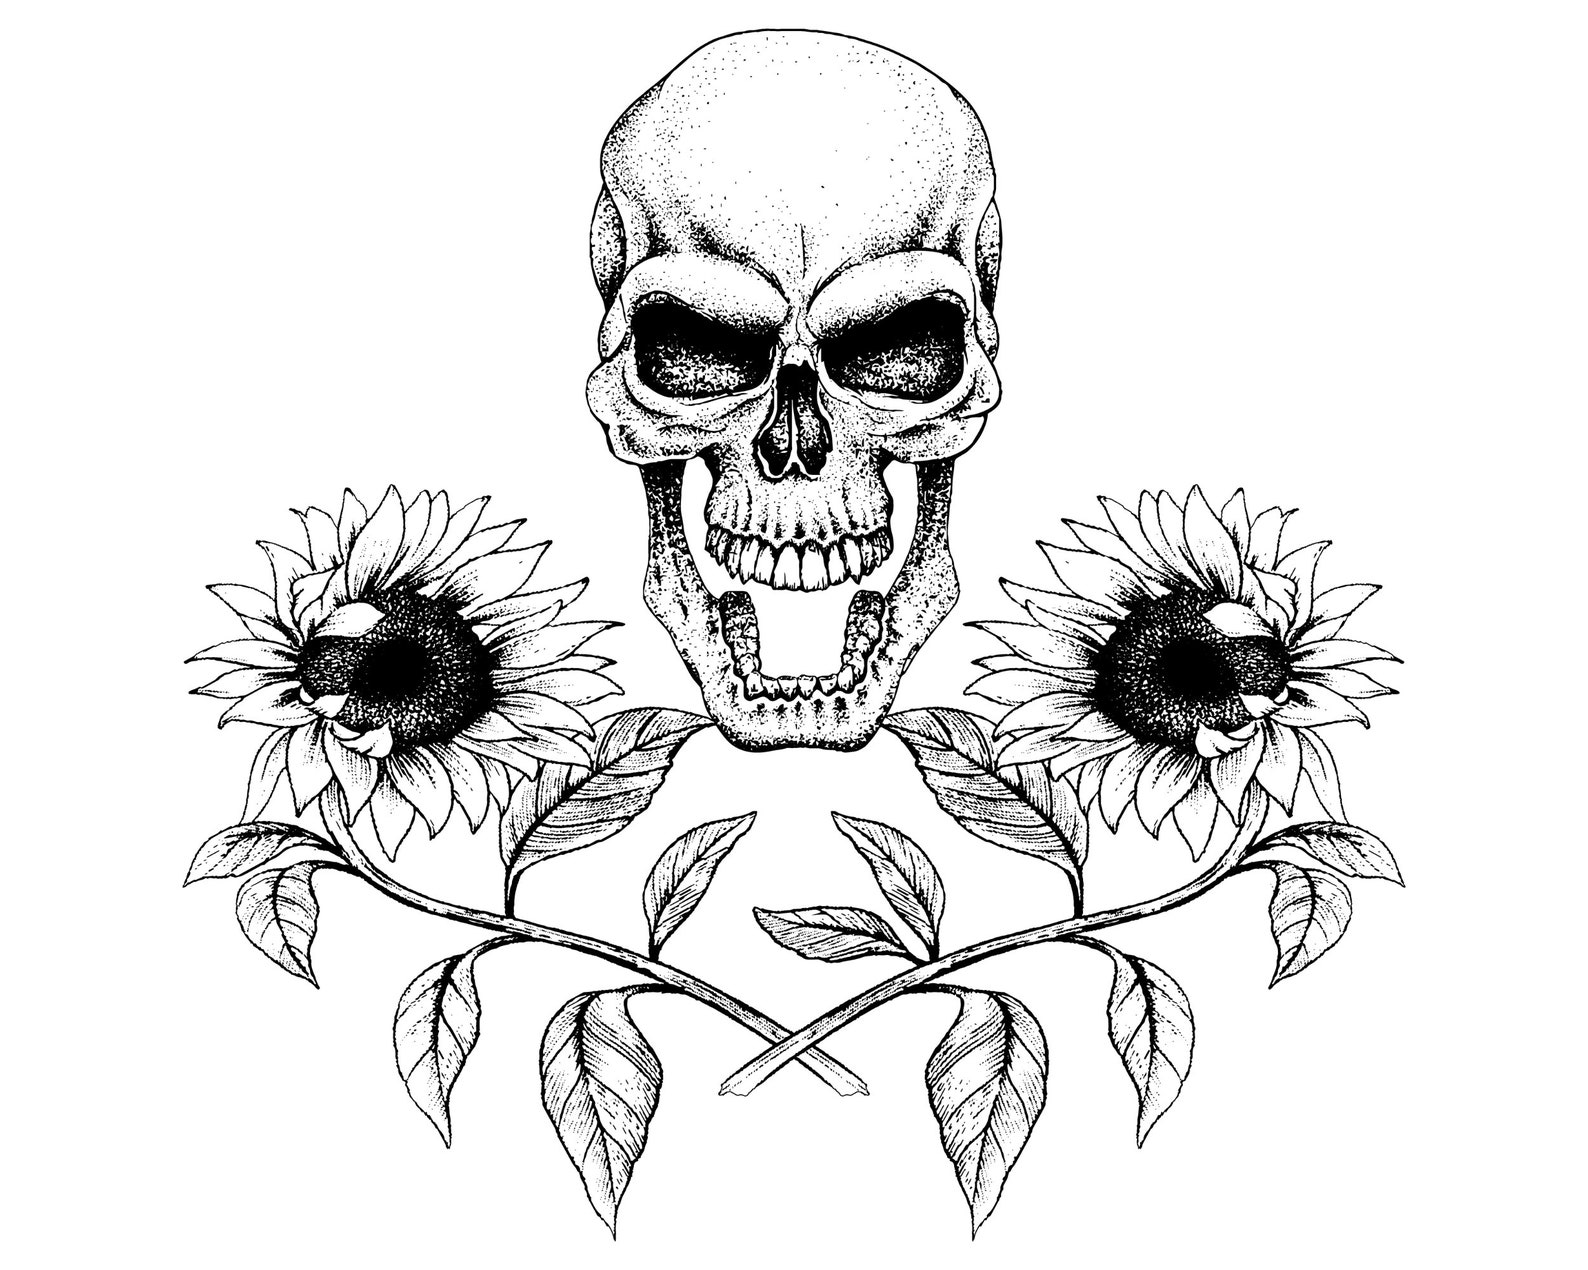 Skull with sunflowers Skull with flowers sunflower SVG | Etsy